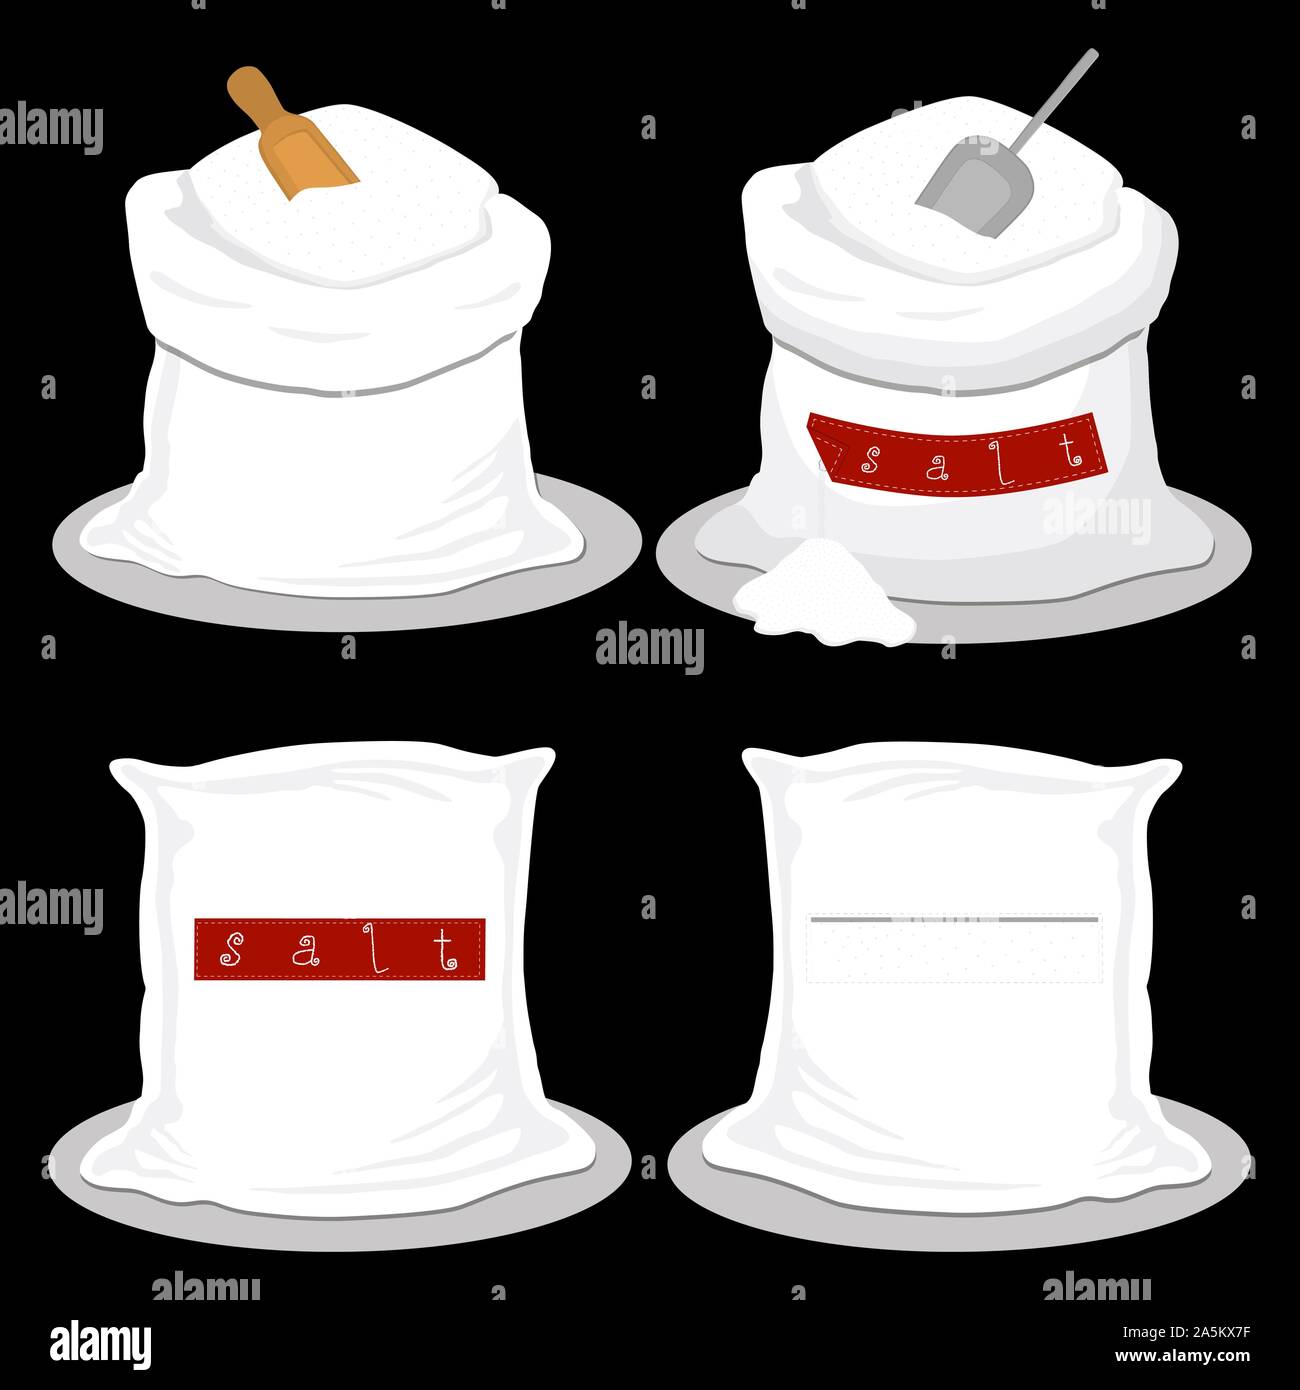 Illustrazione sul tema impostare diversi tipi di sacchi riempiti di sale in polvere, borse varie dimensioni. Sacco disegno costituito da sacche di raccolta sale in polvere per org Illustrazione Vettoriale